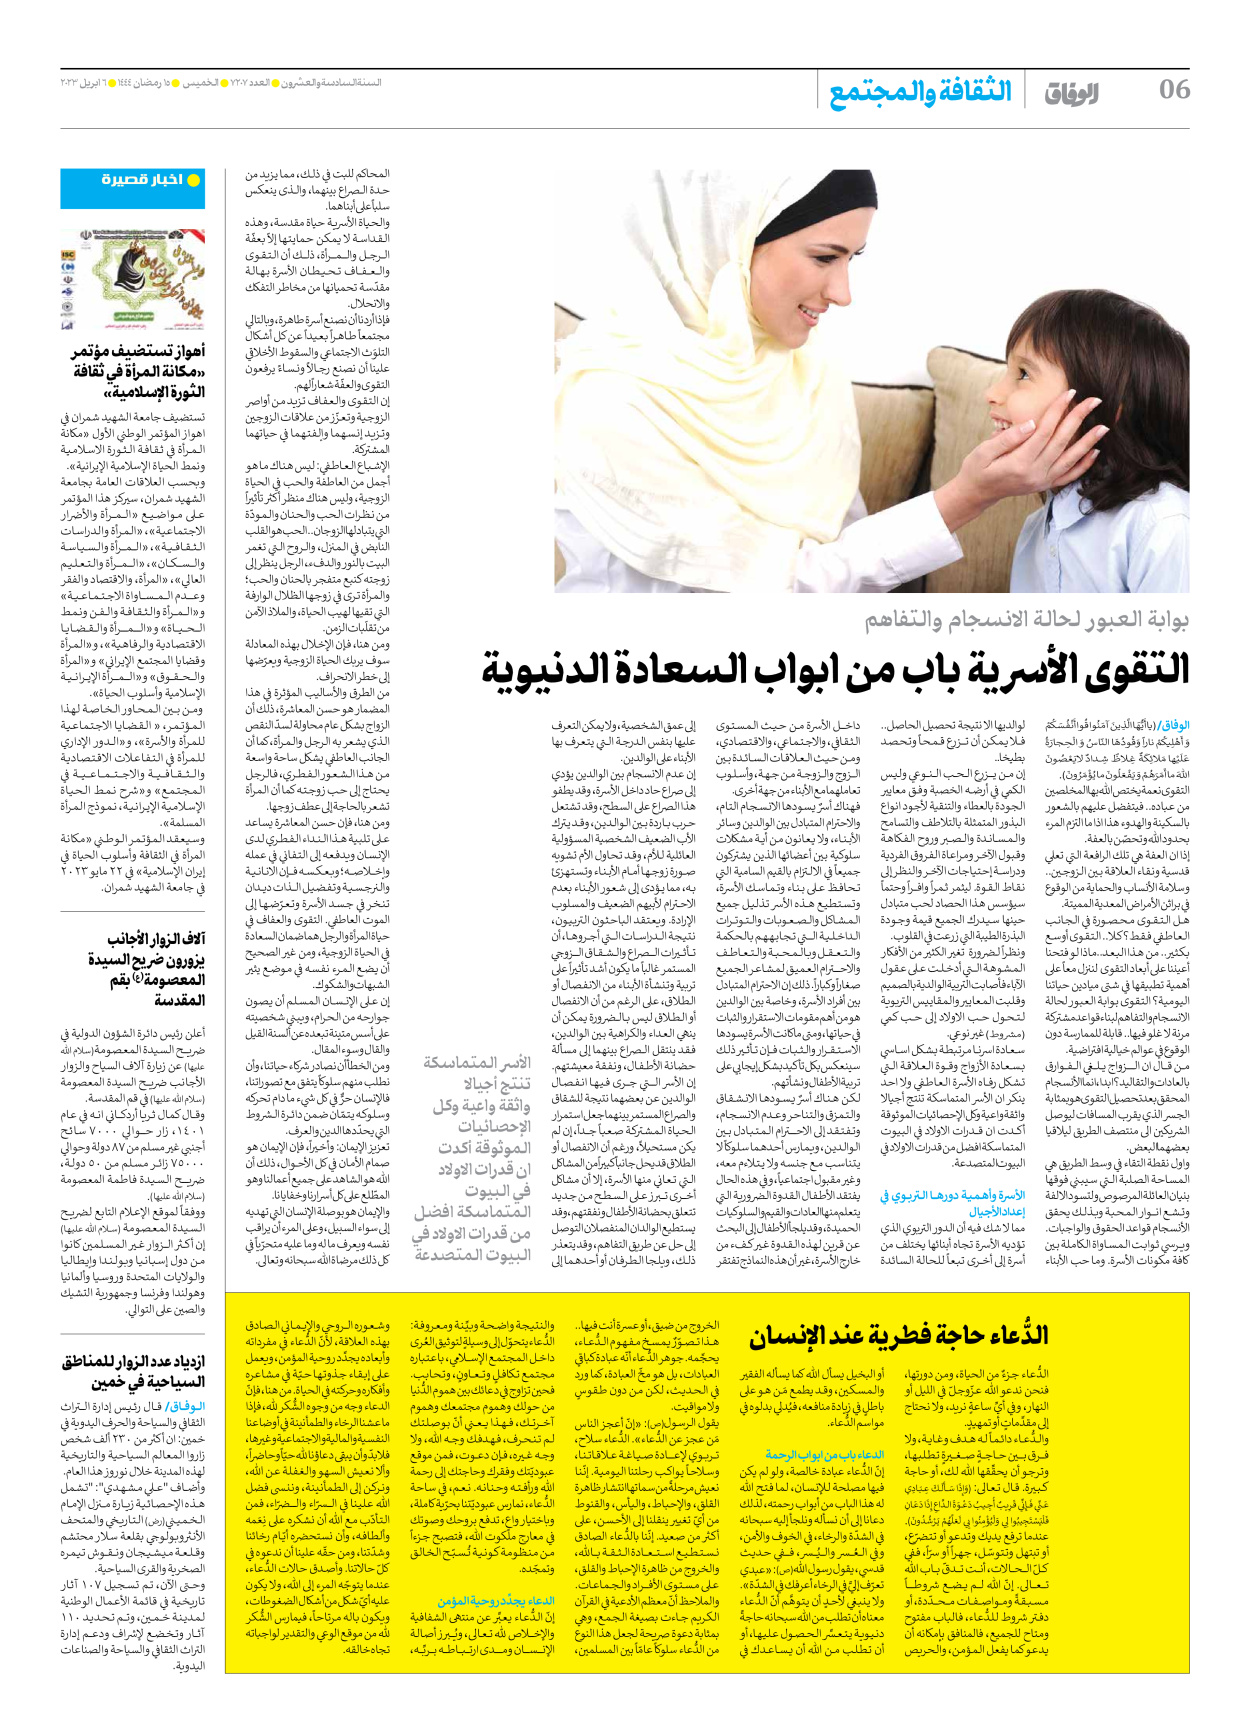 صحیفة ایران الدولیة الوفاق - العدد سبعة آلاف ومائتان وسبعة - ٠٦ أبريل ٢٠٢٣ - الصفحة ٦